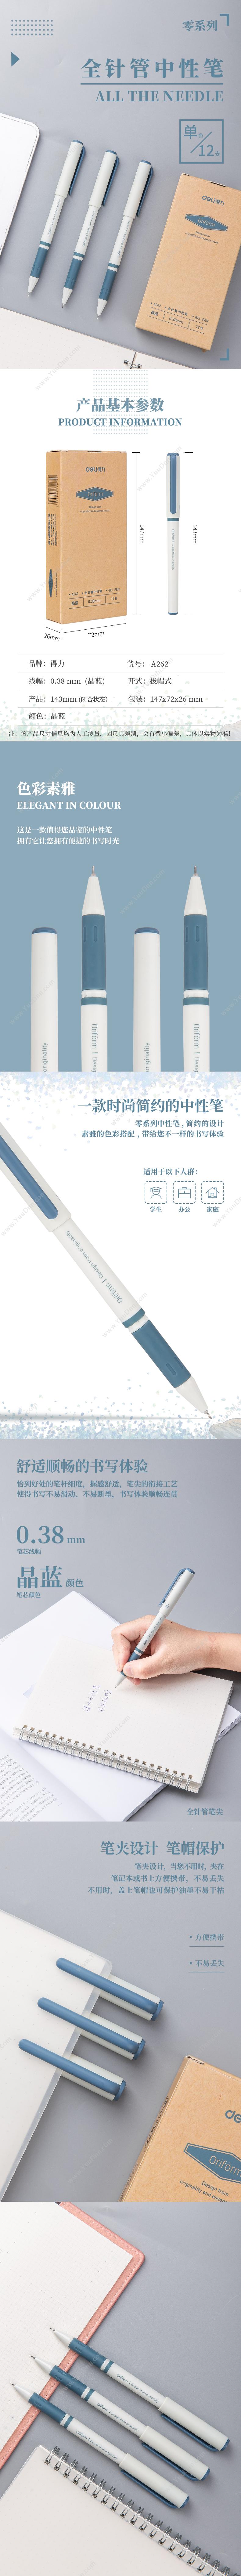 得力 Deli DL-A262 零系列全针管中性笔 0.38mm 12支/盒 晶蓝 插盖式中性笔